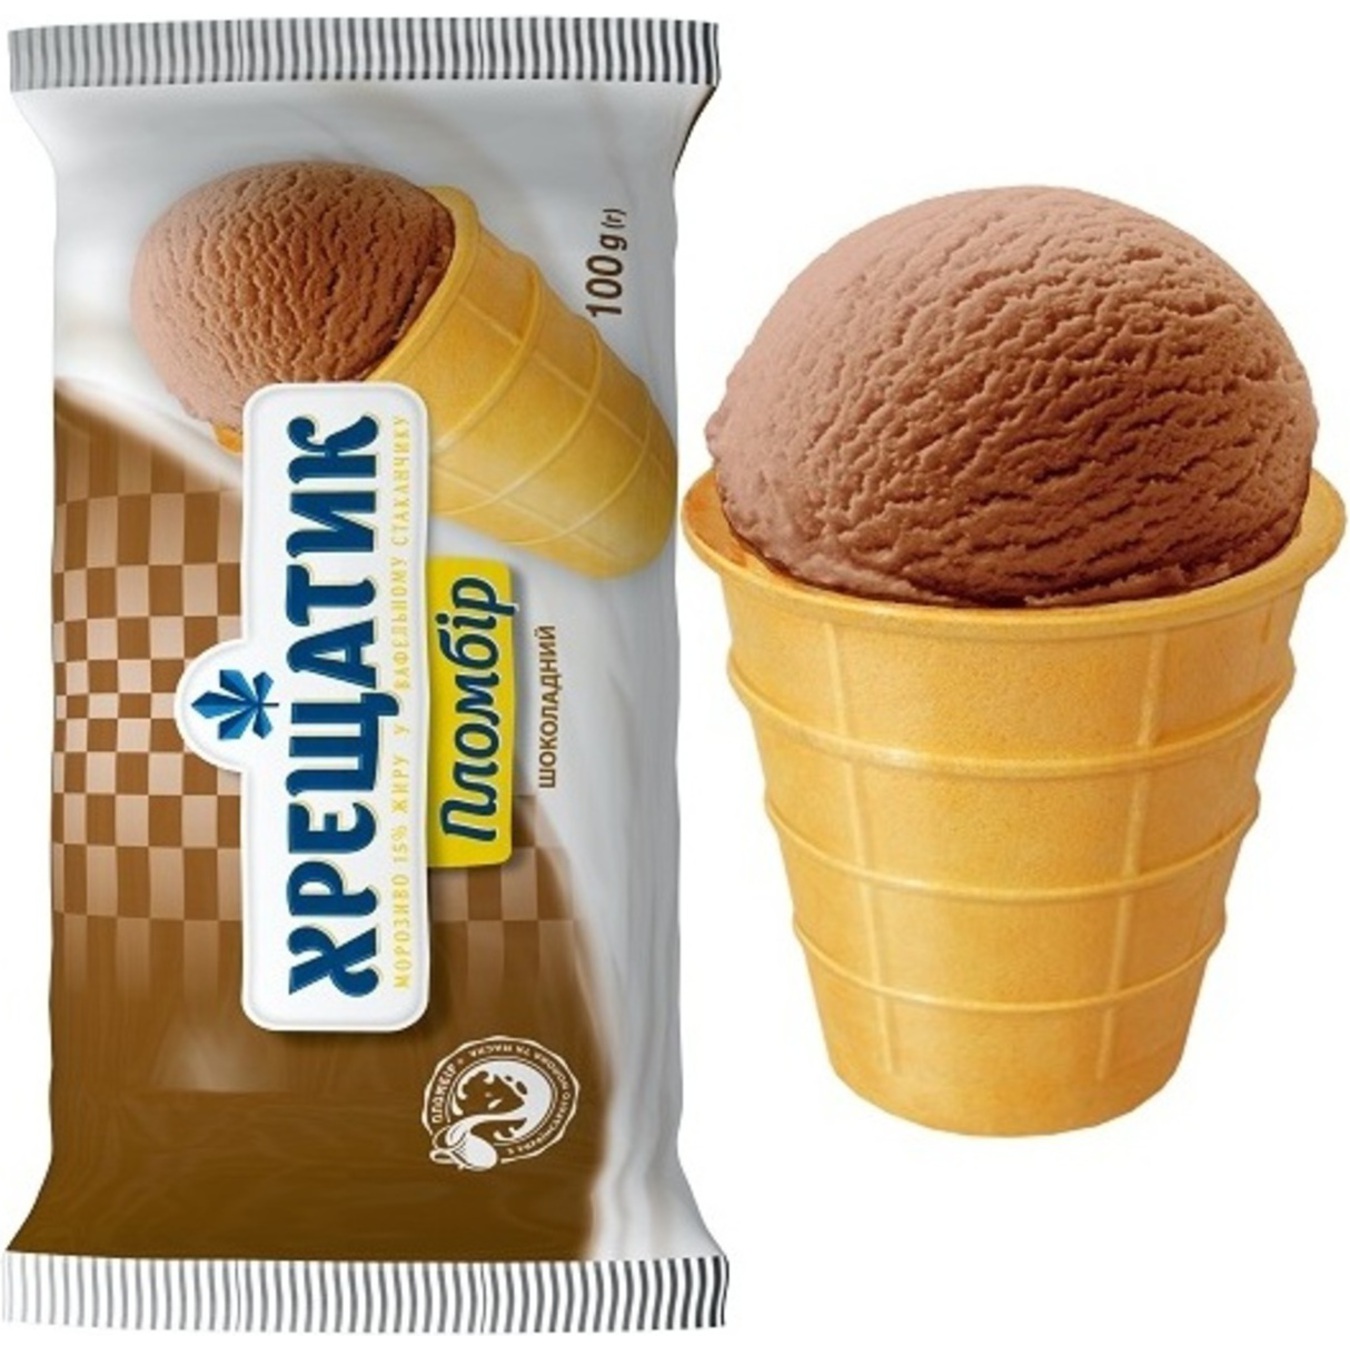 Морозиво Хрещатик пломбір шоколадний у вафельному стаканчику 100г